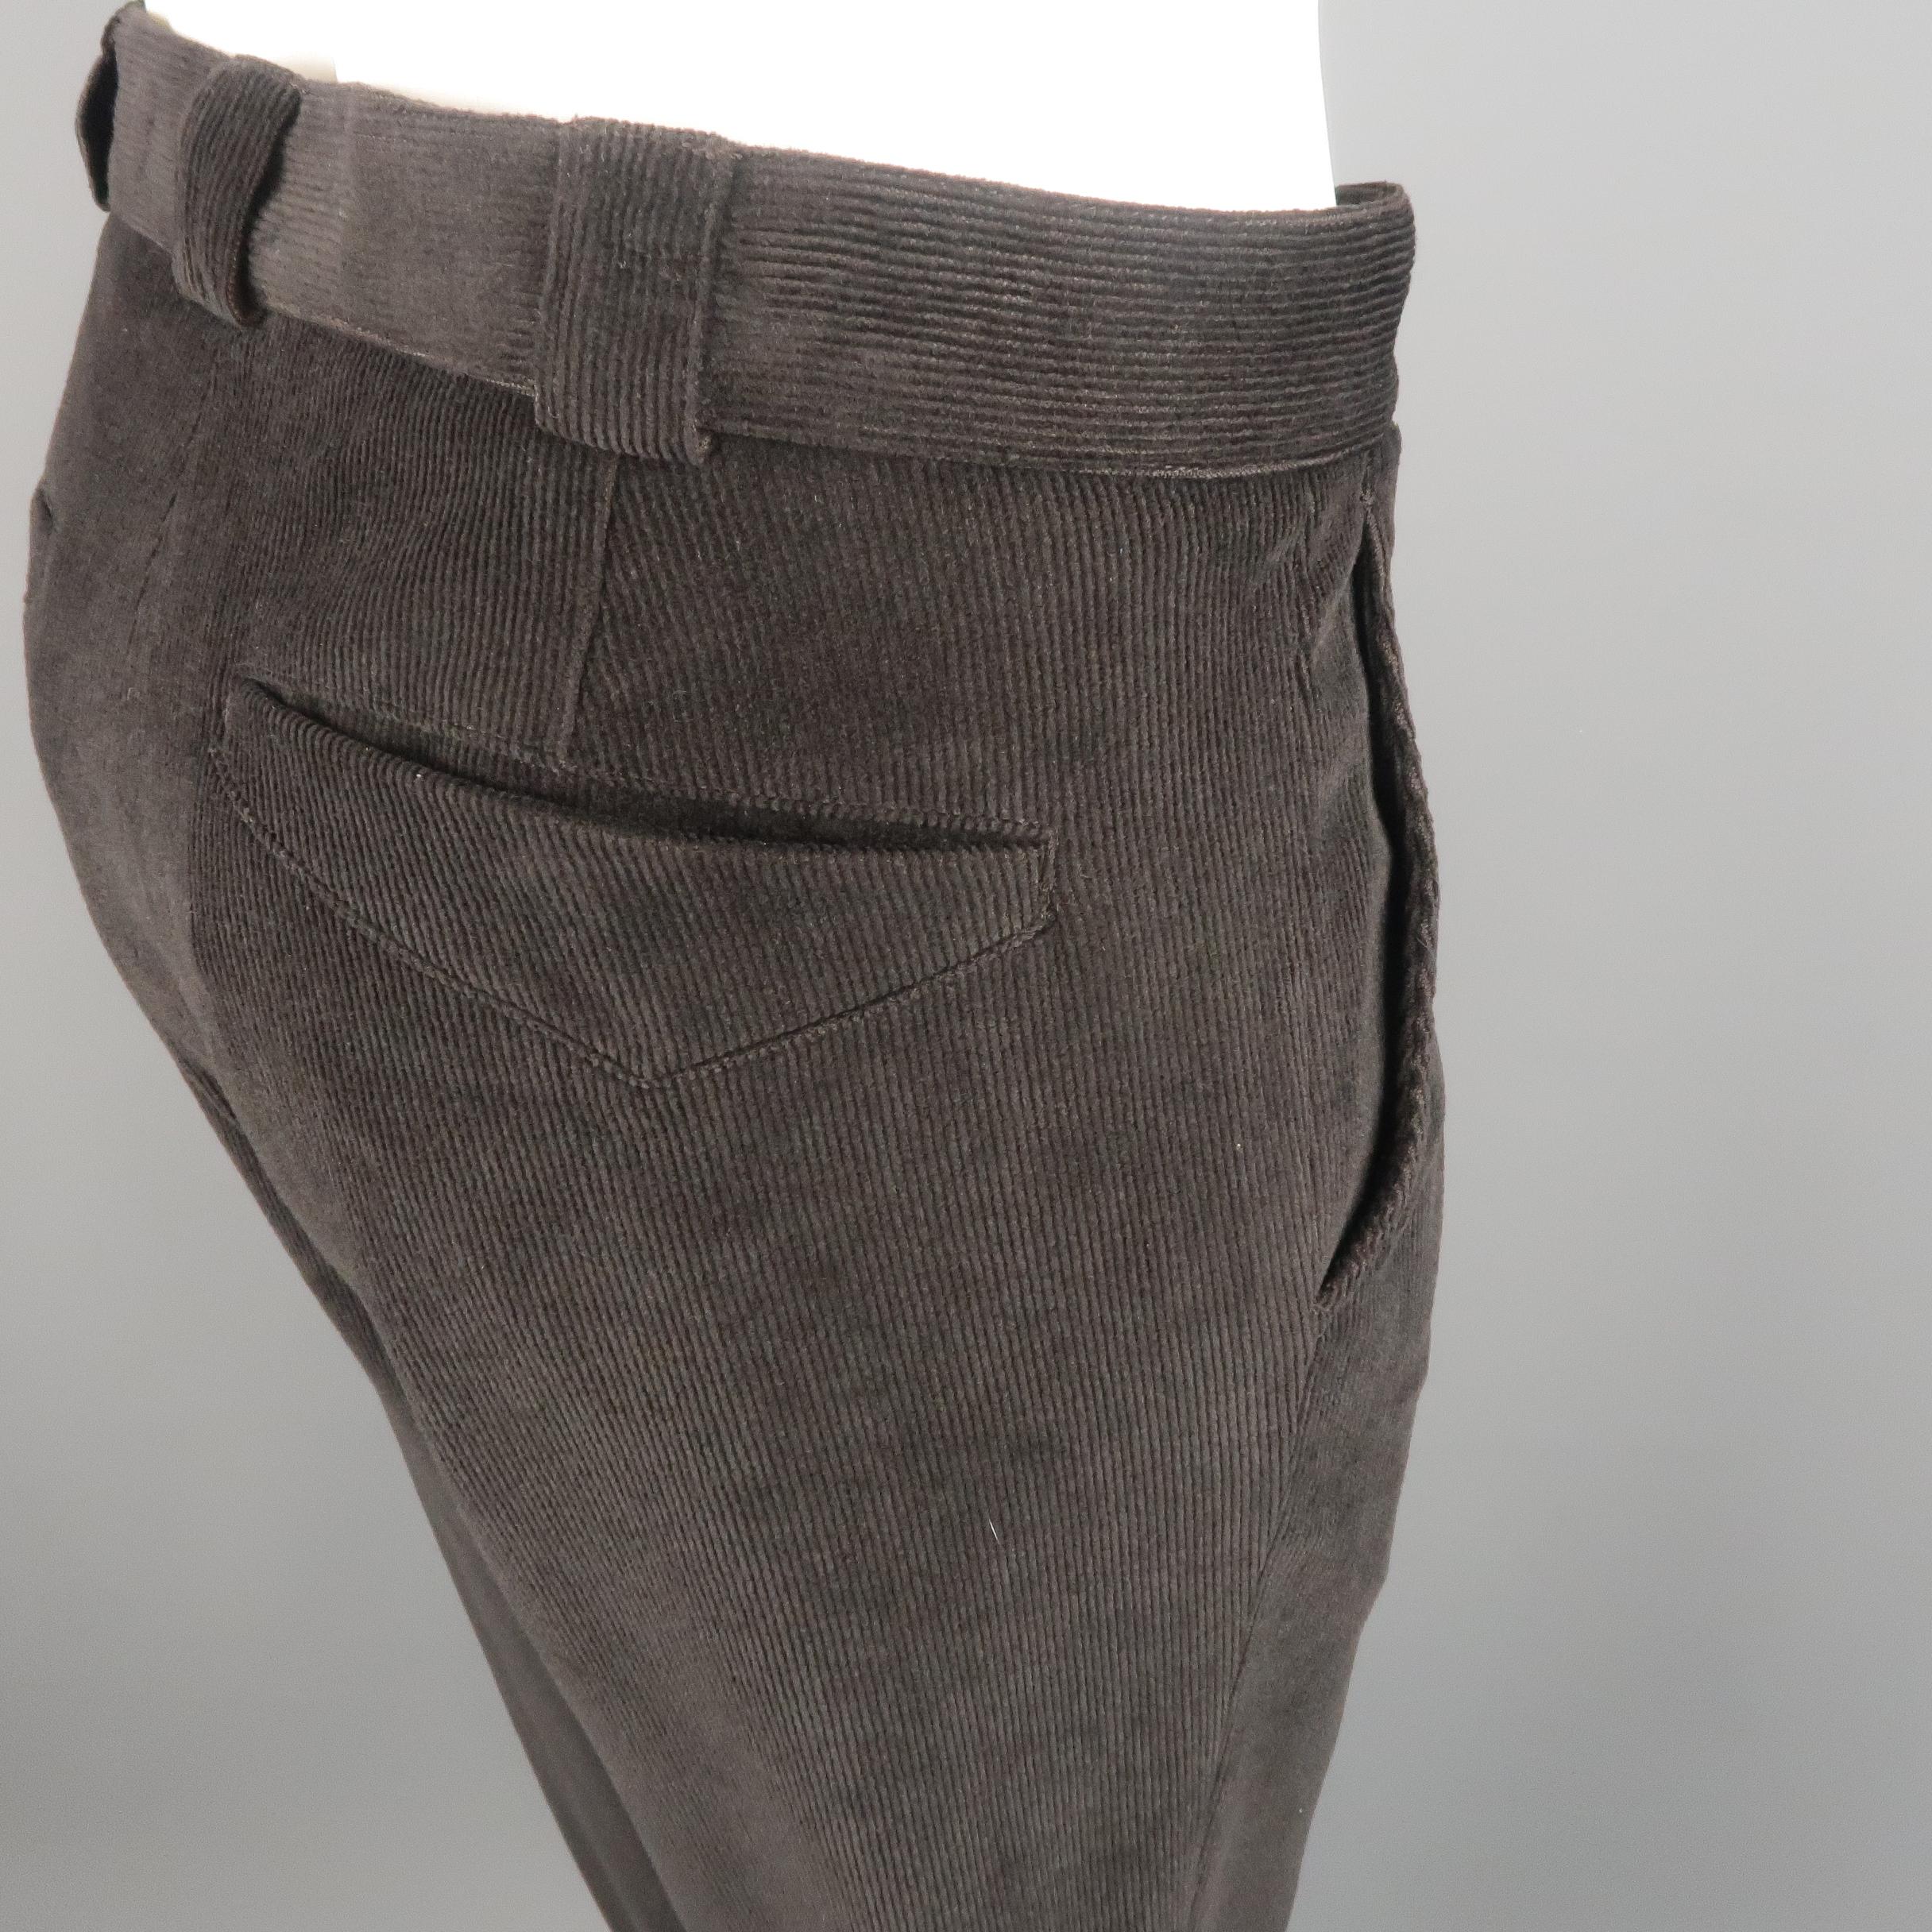 GIORGIO ARMANI Size 34 Brown Solid Corduroy Dress Pants 1